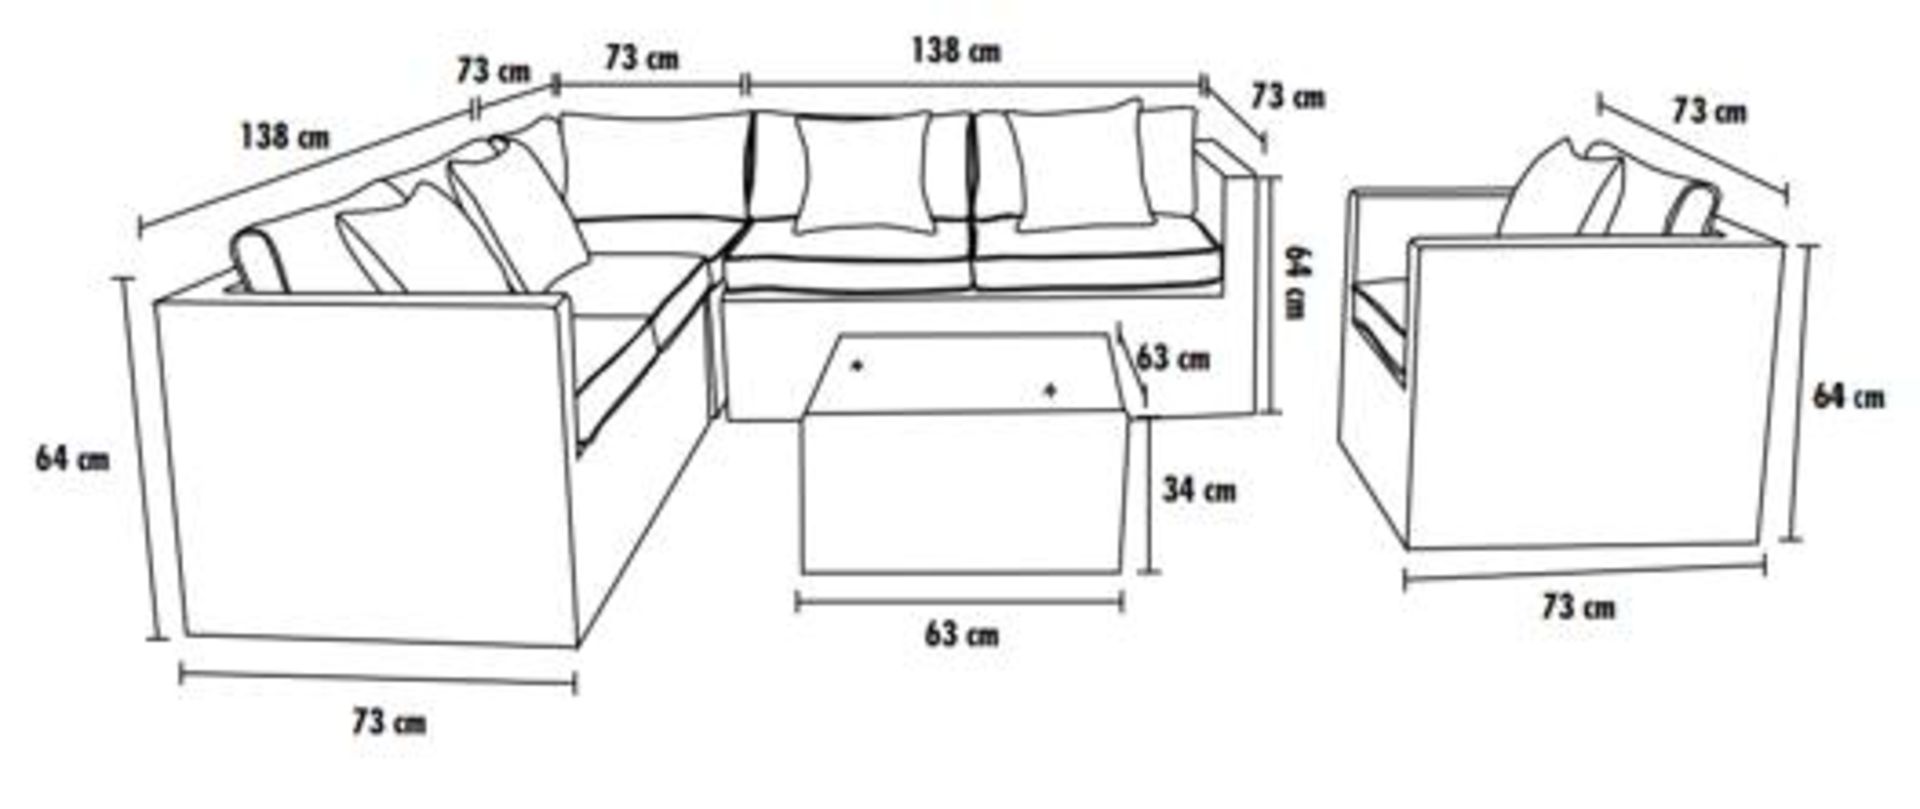 Brandon Corner Sofa, Armchair and coffee table - Image 3 of 3